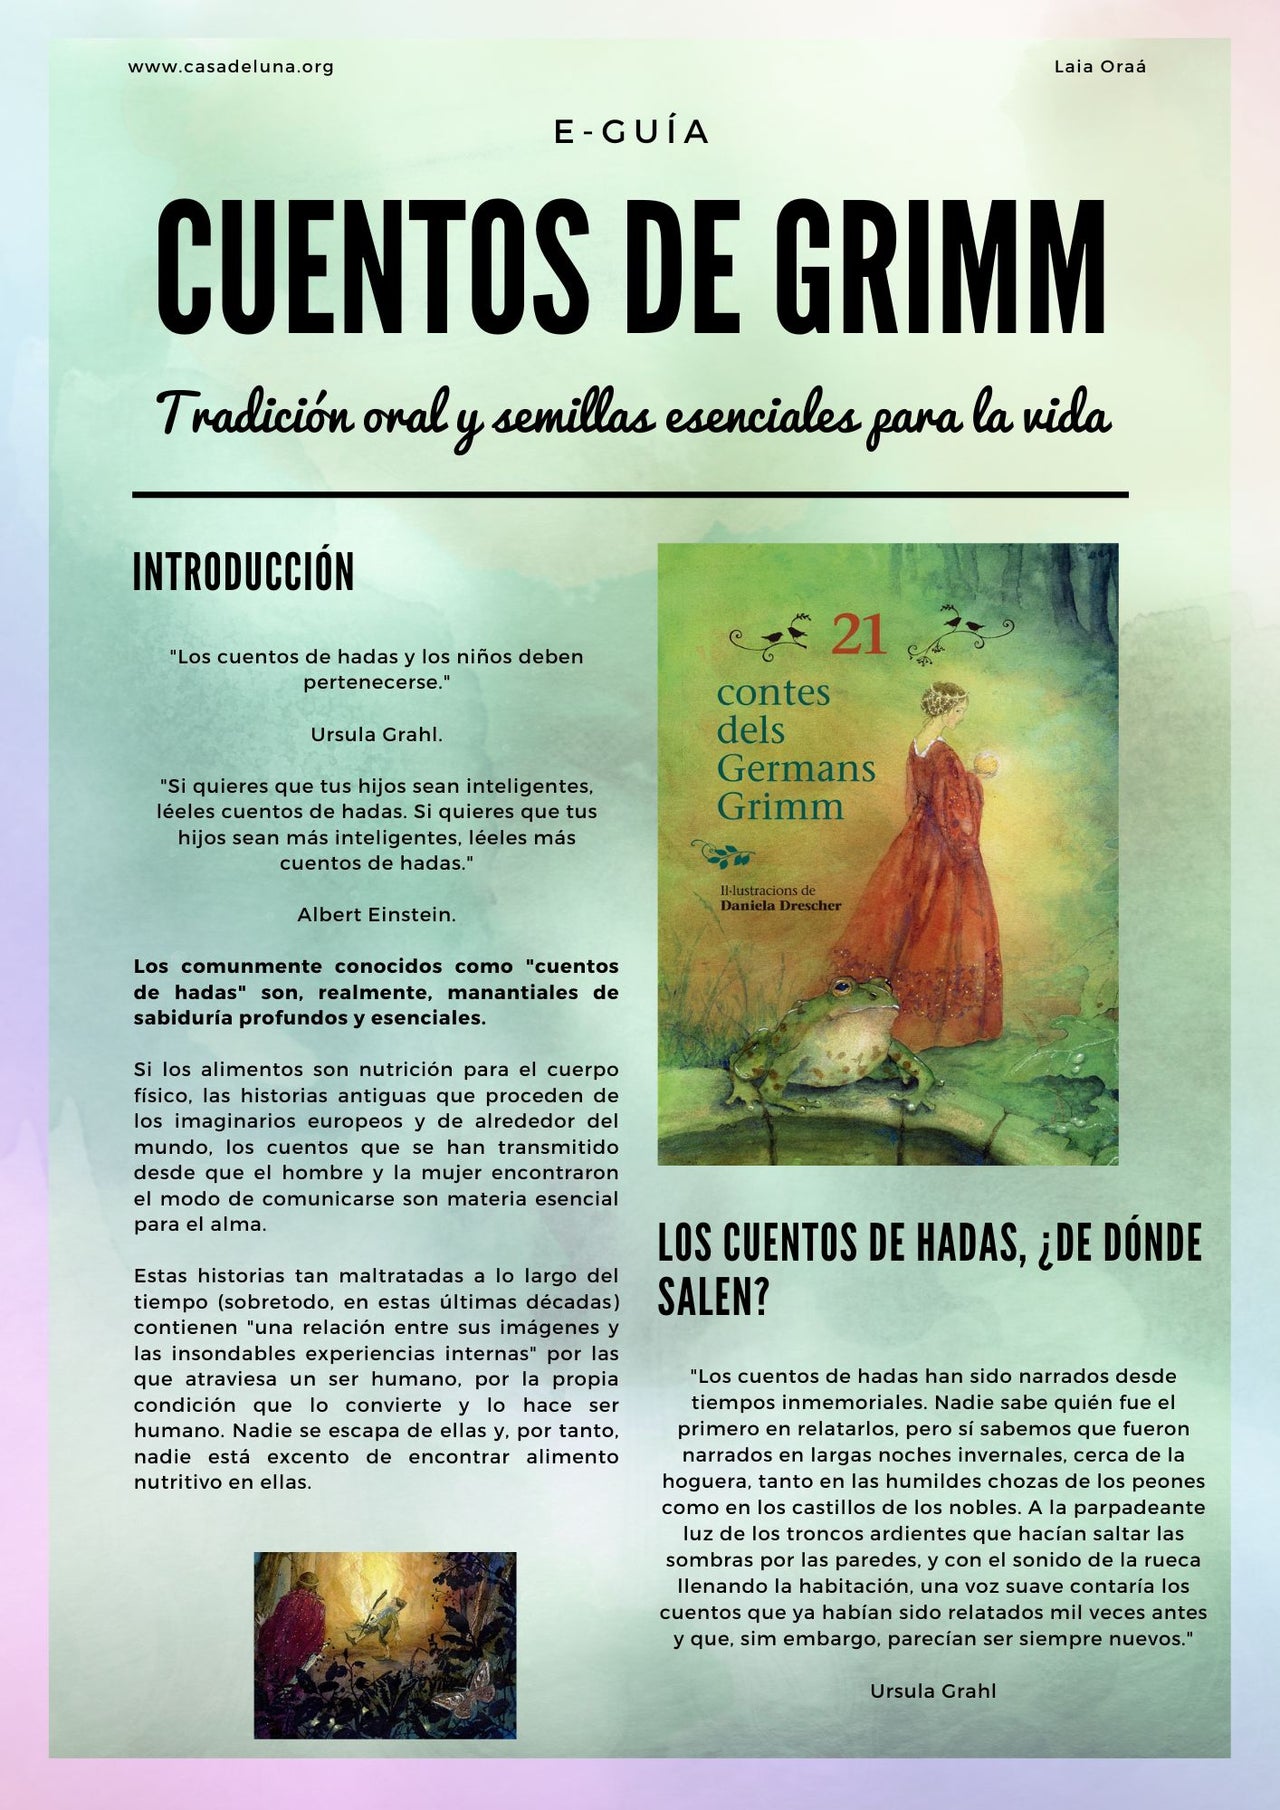 E-Guía "Cuentos de Grimm: Tradición oral y semillas esenciales para la vida"